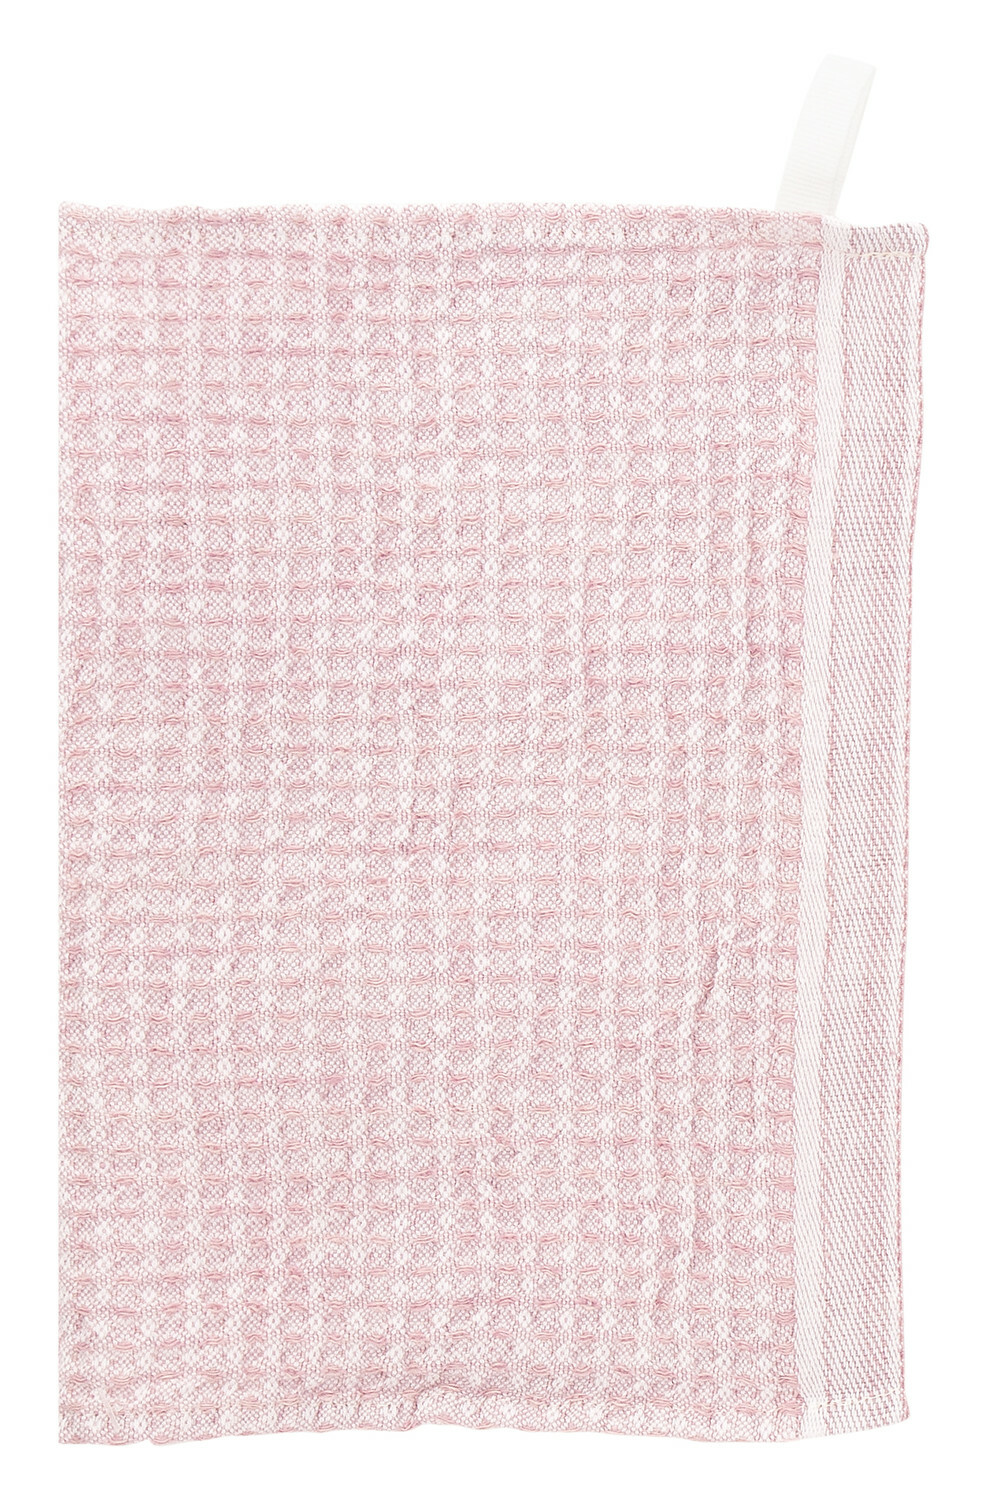 Lapuan Kankurit Maija Tea Towel | NØRDIK White-Cinnamon